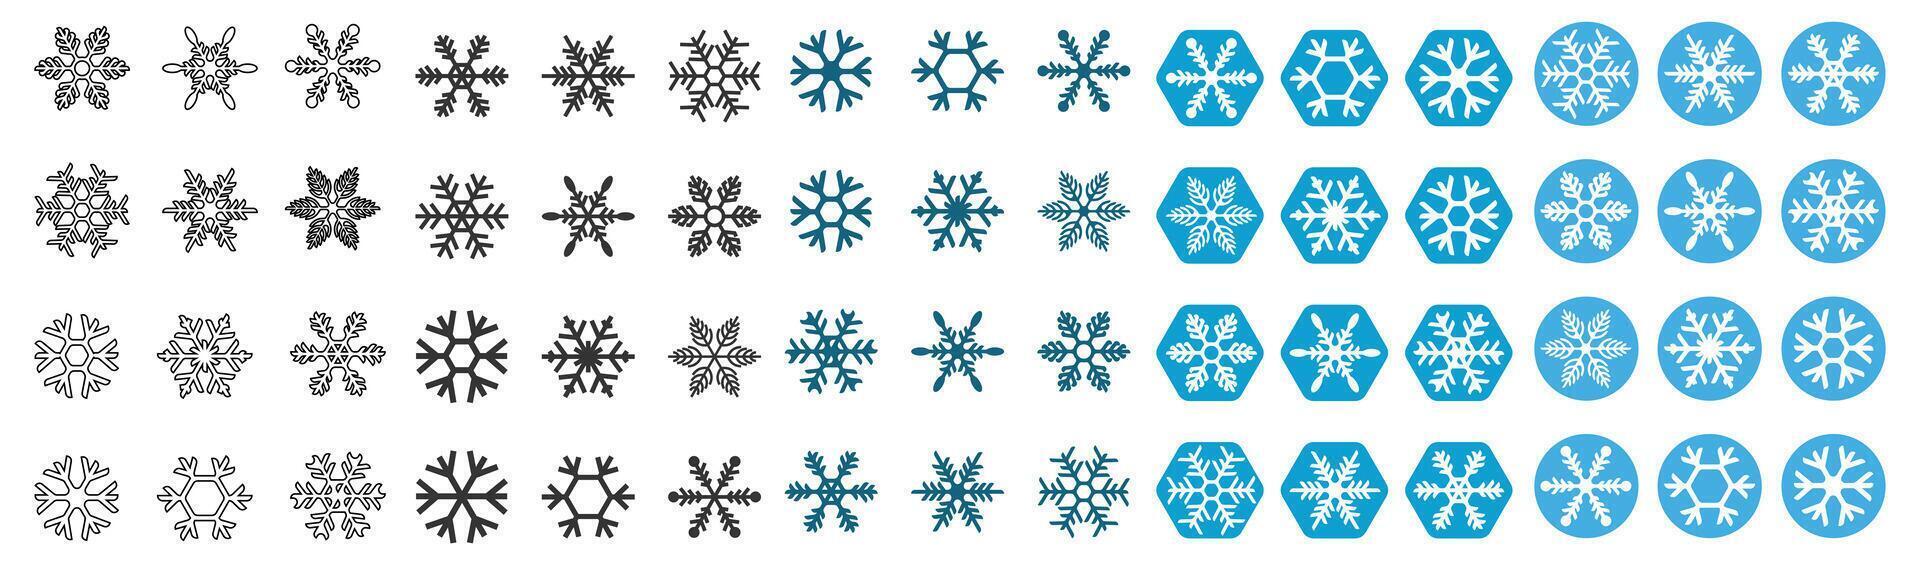 Schnee Blume Design Symbol einstellen vektor